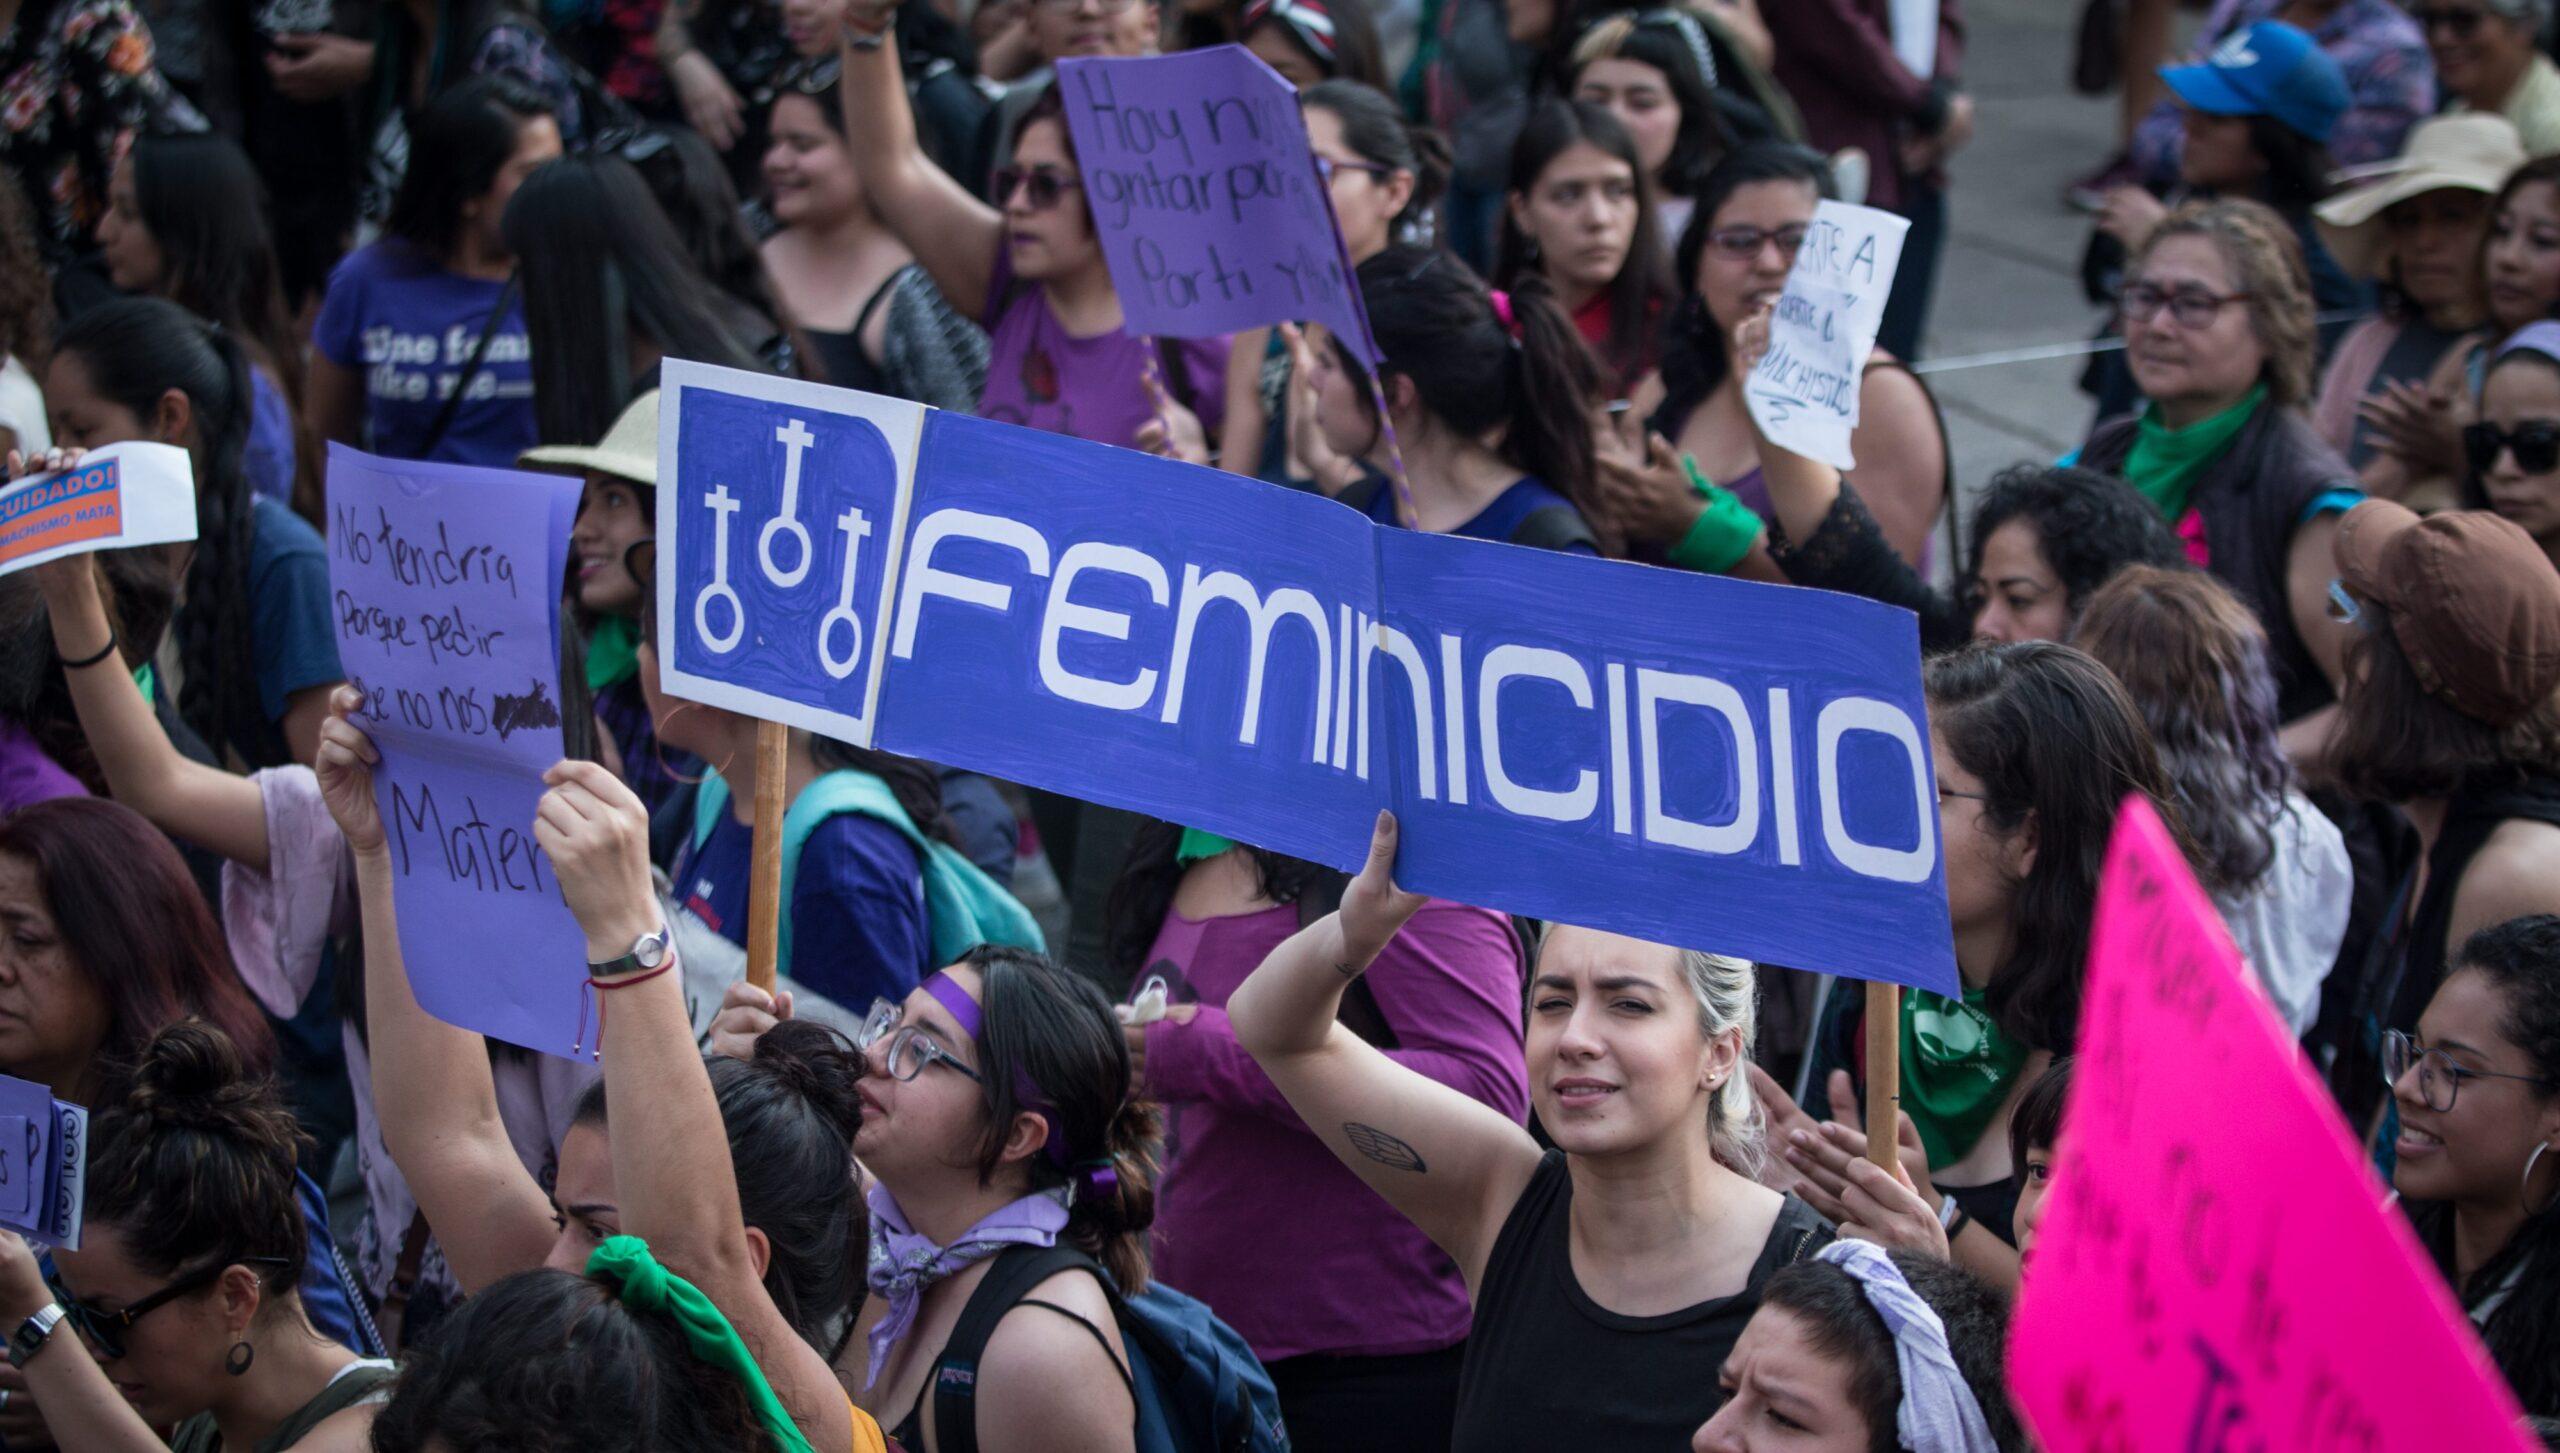 Estado oculta feminicidios cometidos por crimen organizado y no investiga, acusan activistas de 23 entidades